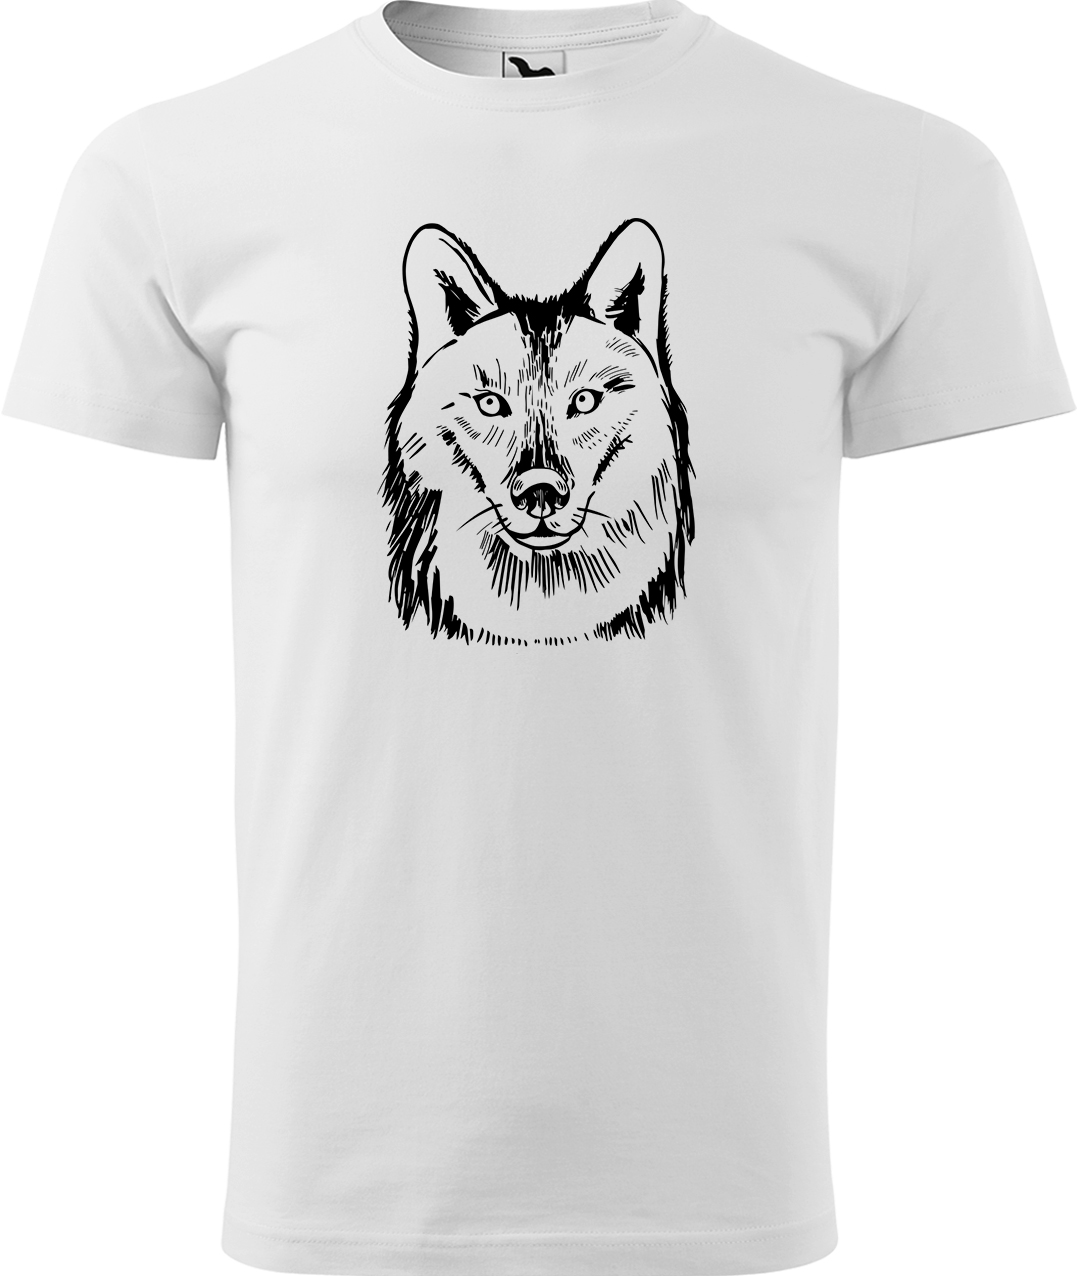 Pánské tričko s vlkem - Kresba vlka Velikost: XL, Barva: Bílá (00), Střih: pánský